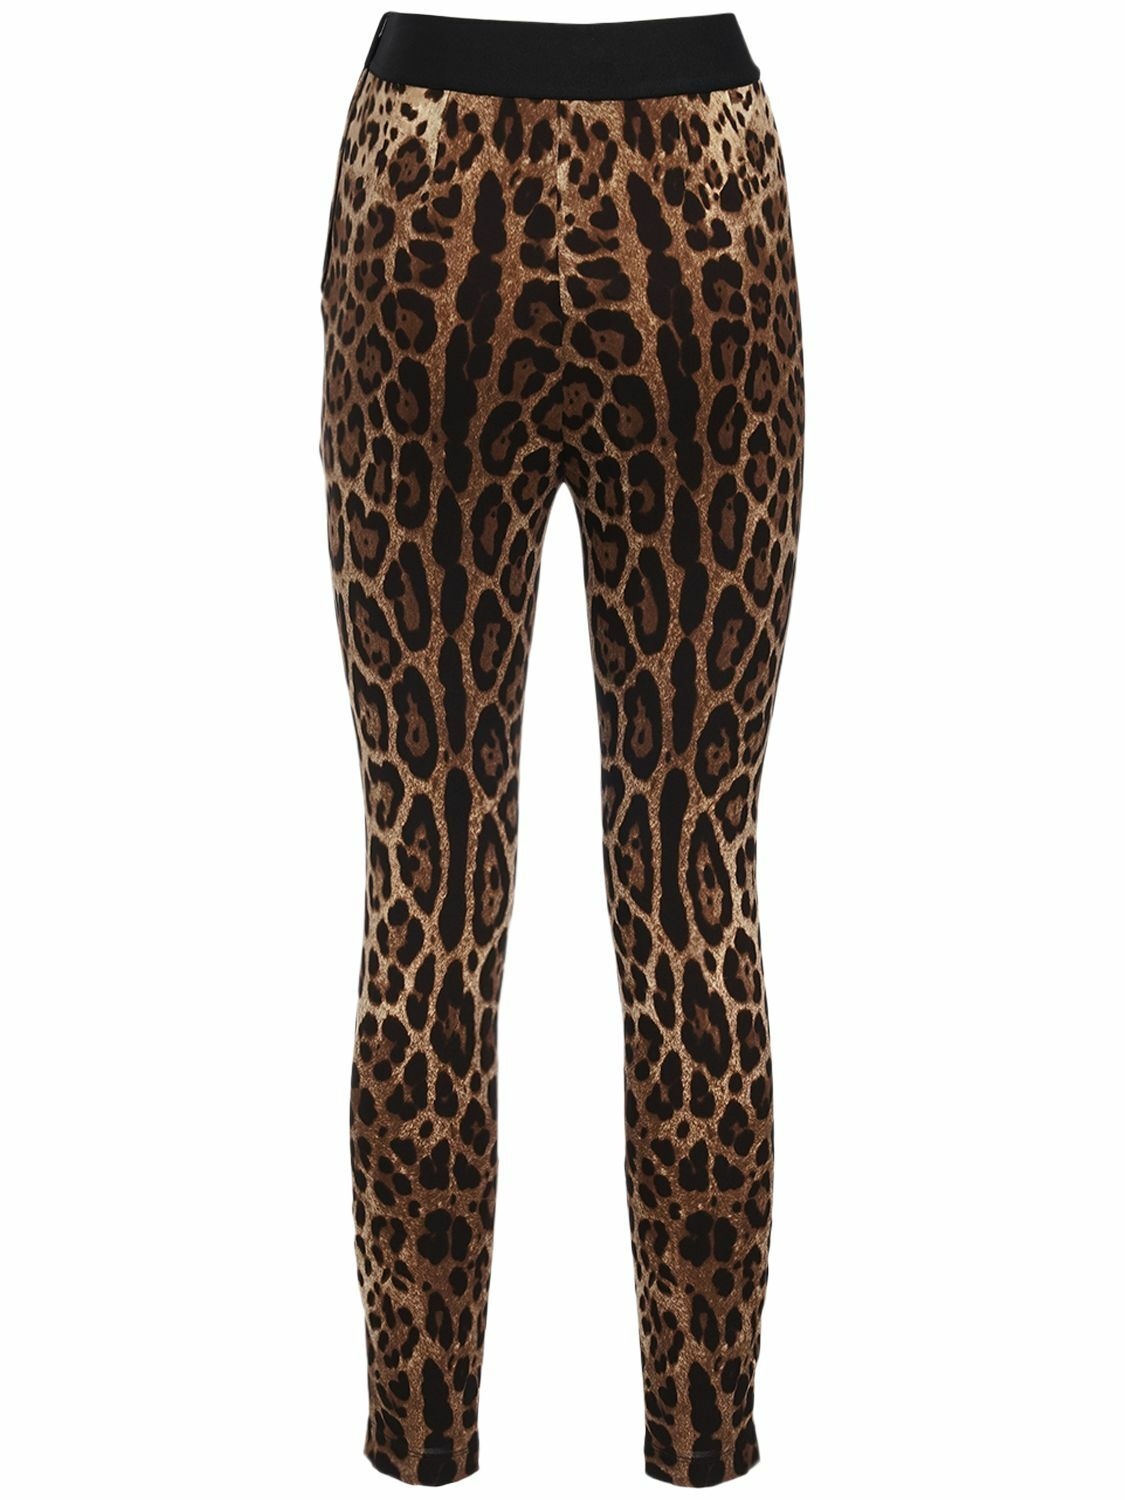 DOLCE & GABBANA - Leopard Print Jersey Leggings Dolce & Gabbana